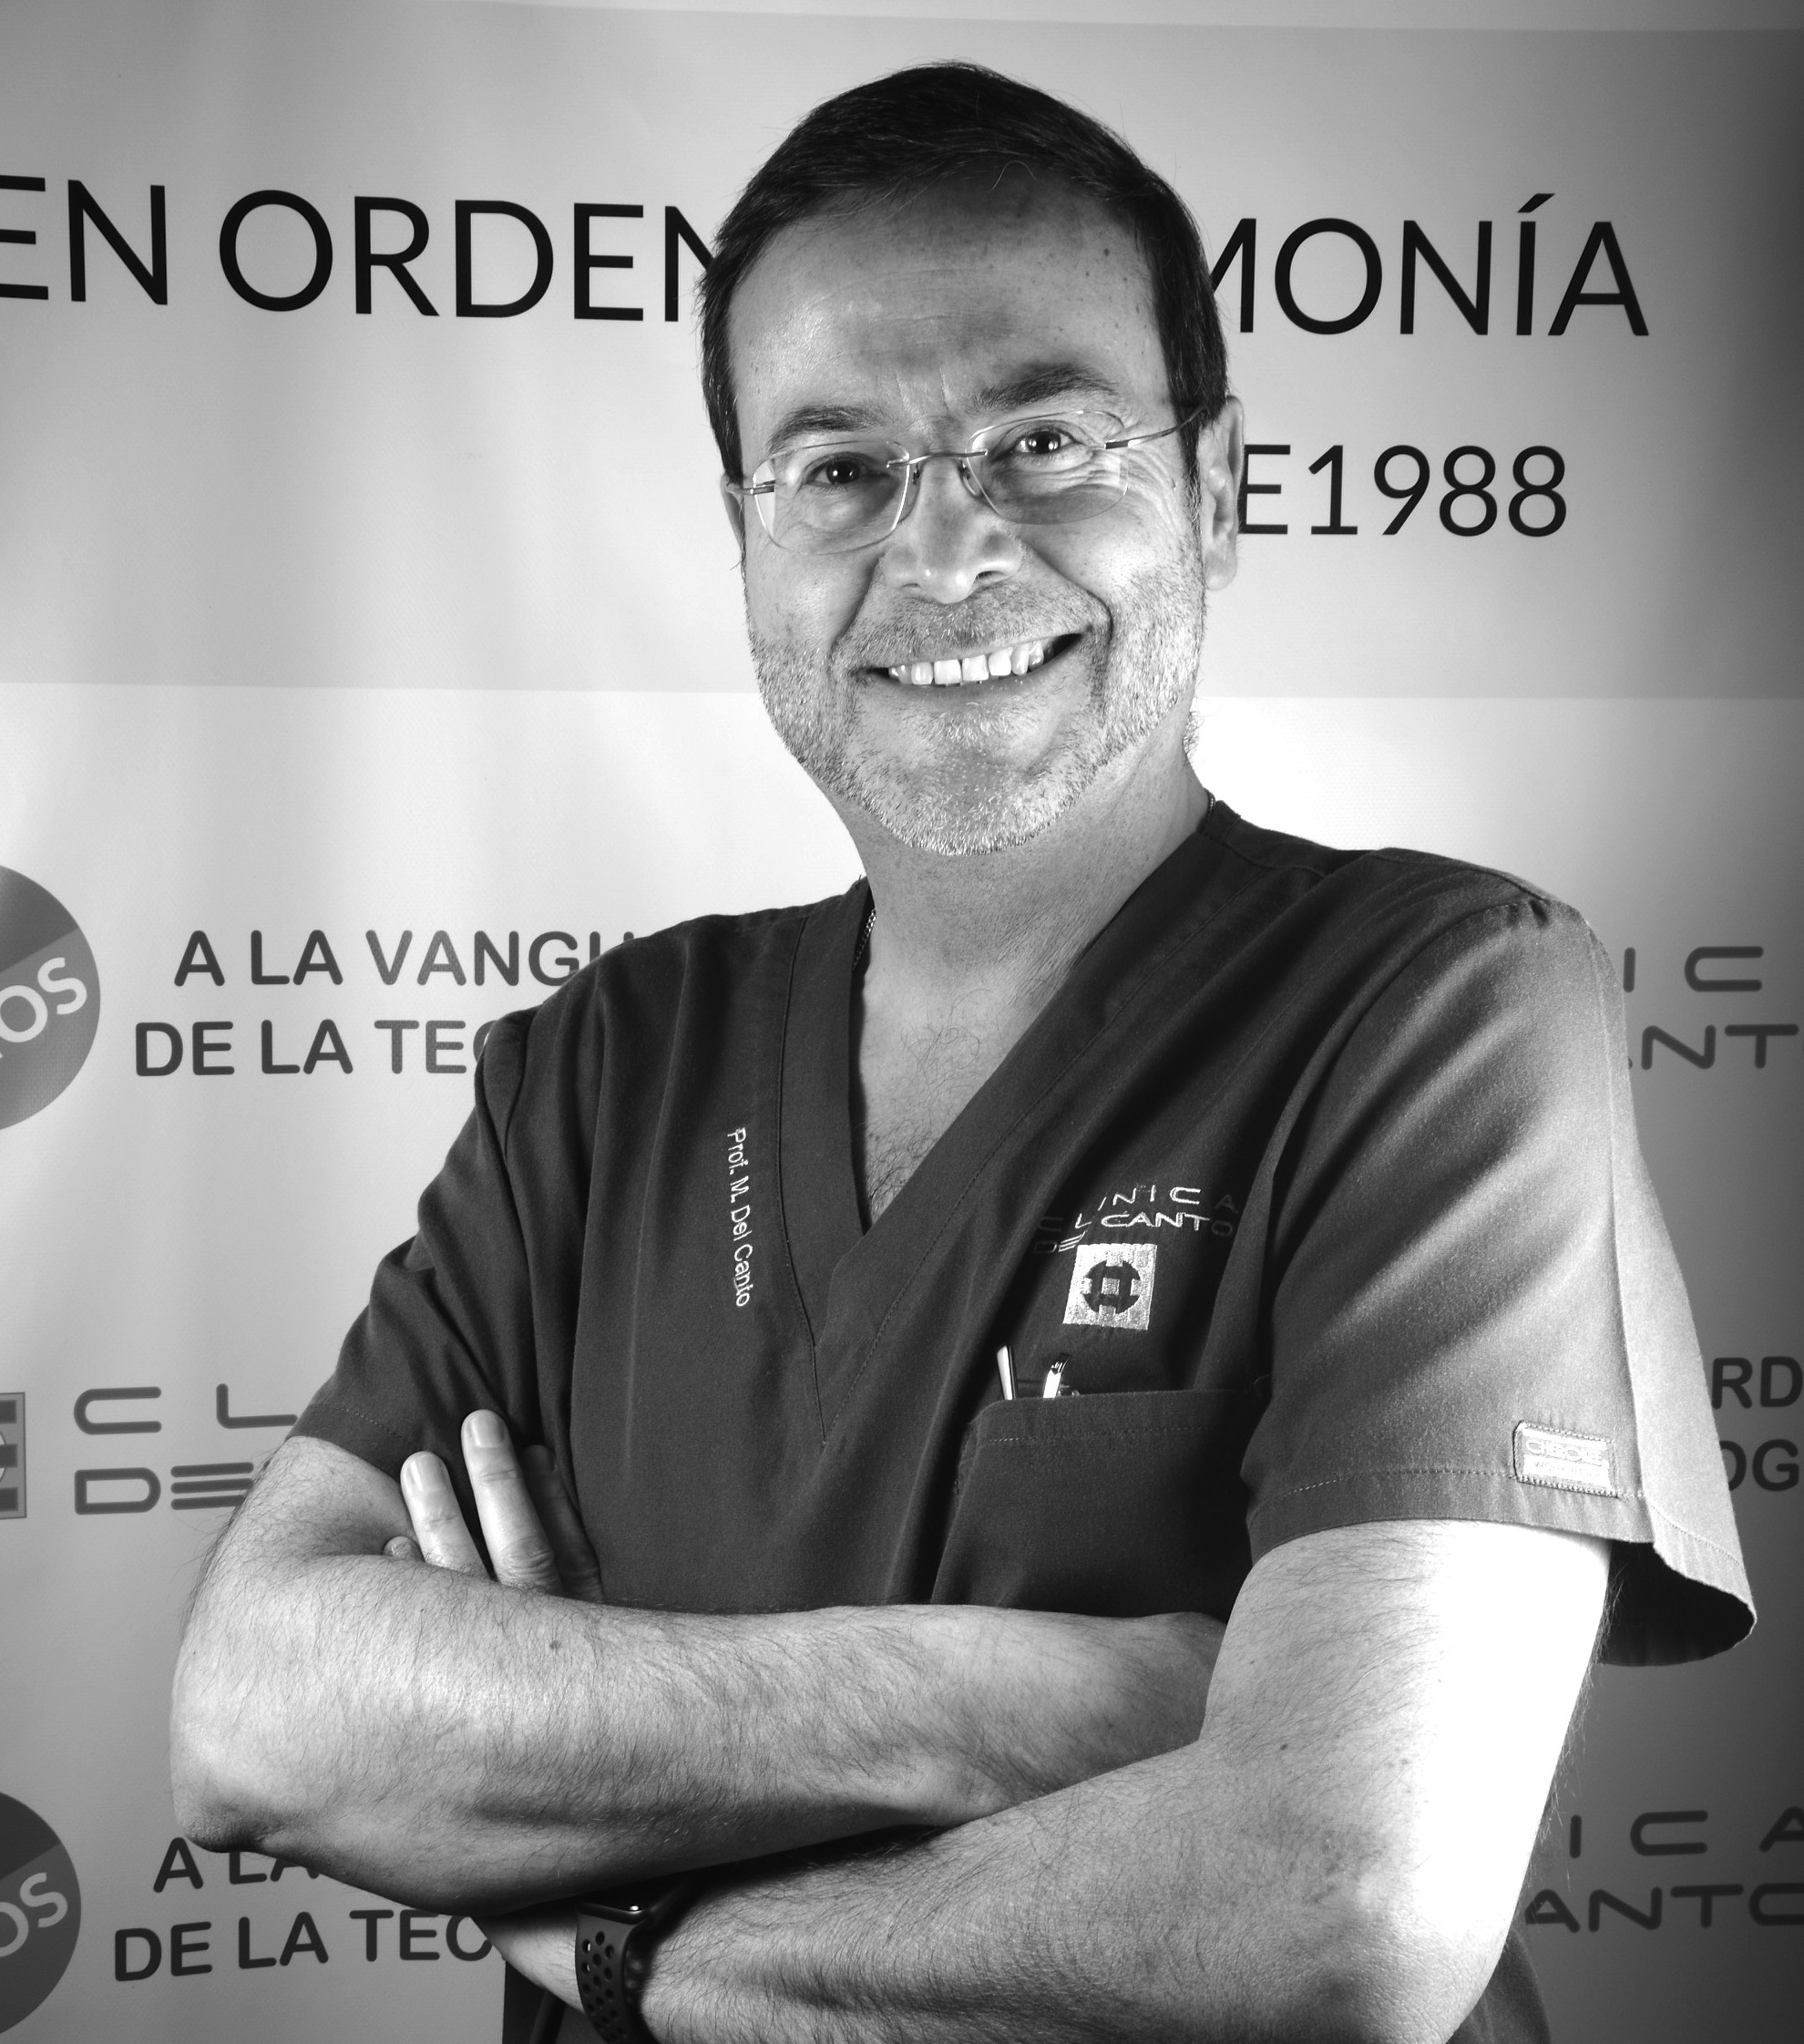 Dr. Mariano del Canto Pingarrón, MD, DDS, PHD. Profesor y director del Máster en Cirugía Bucal, Implantología y Periodoncia de la Universidad de León.